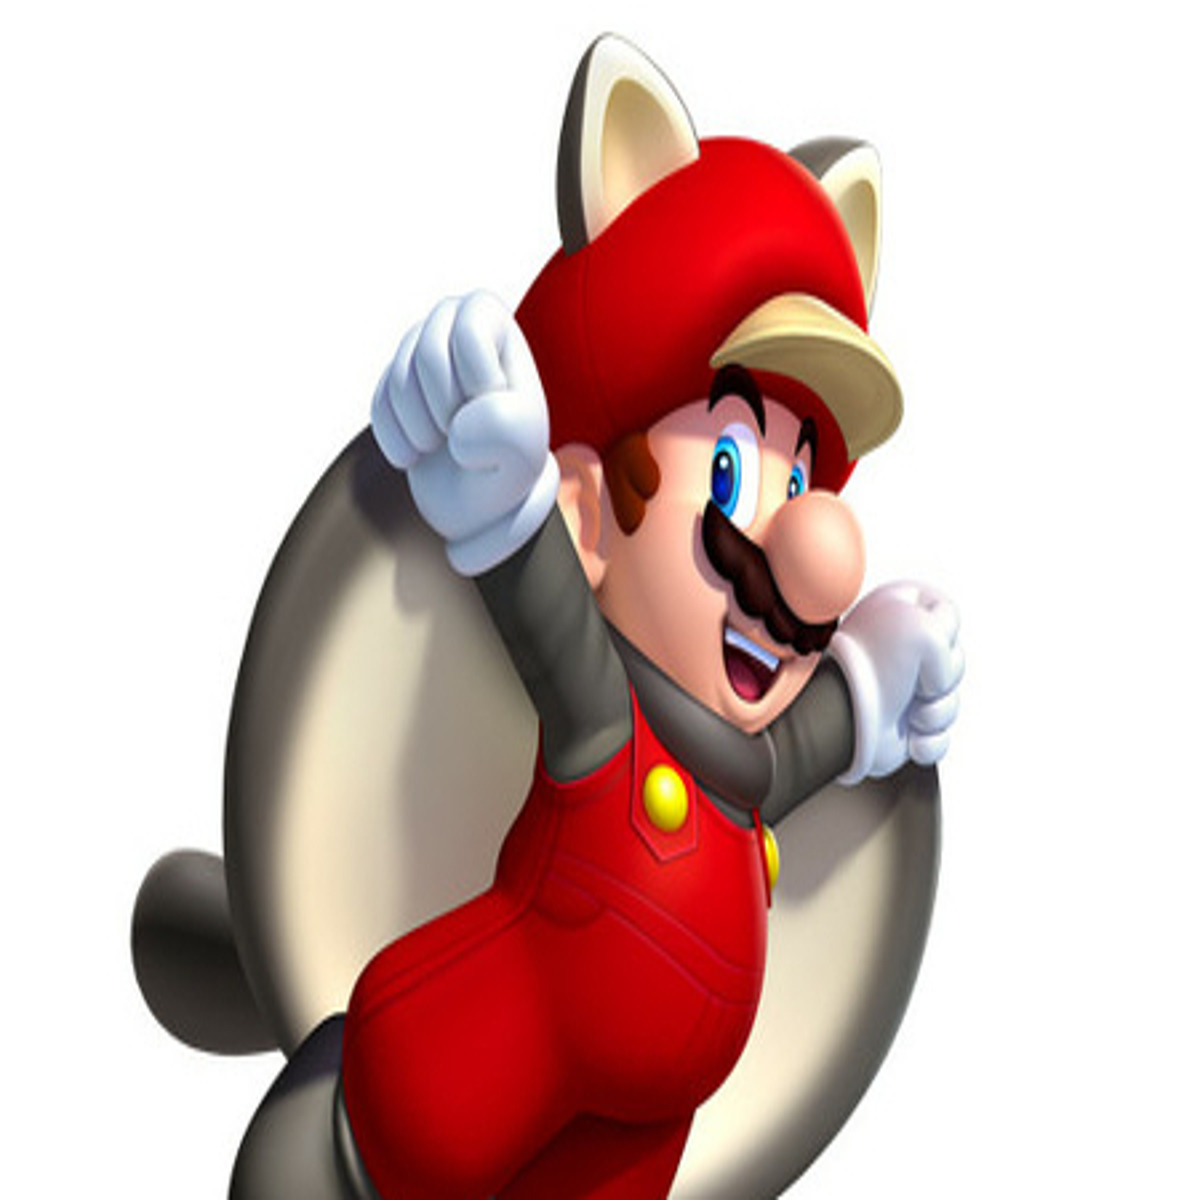 Antevisão: Super Mario Odyssey - Meus Jogos